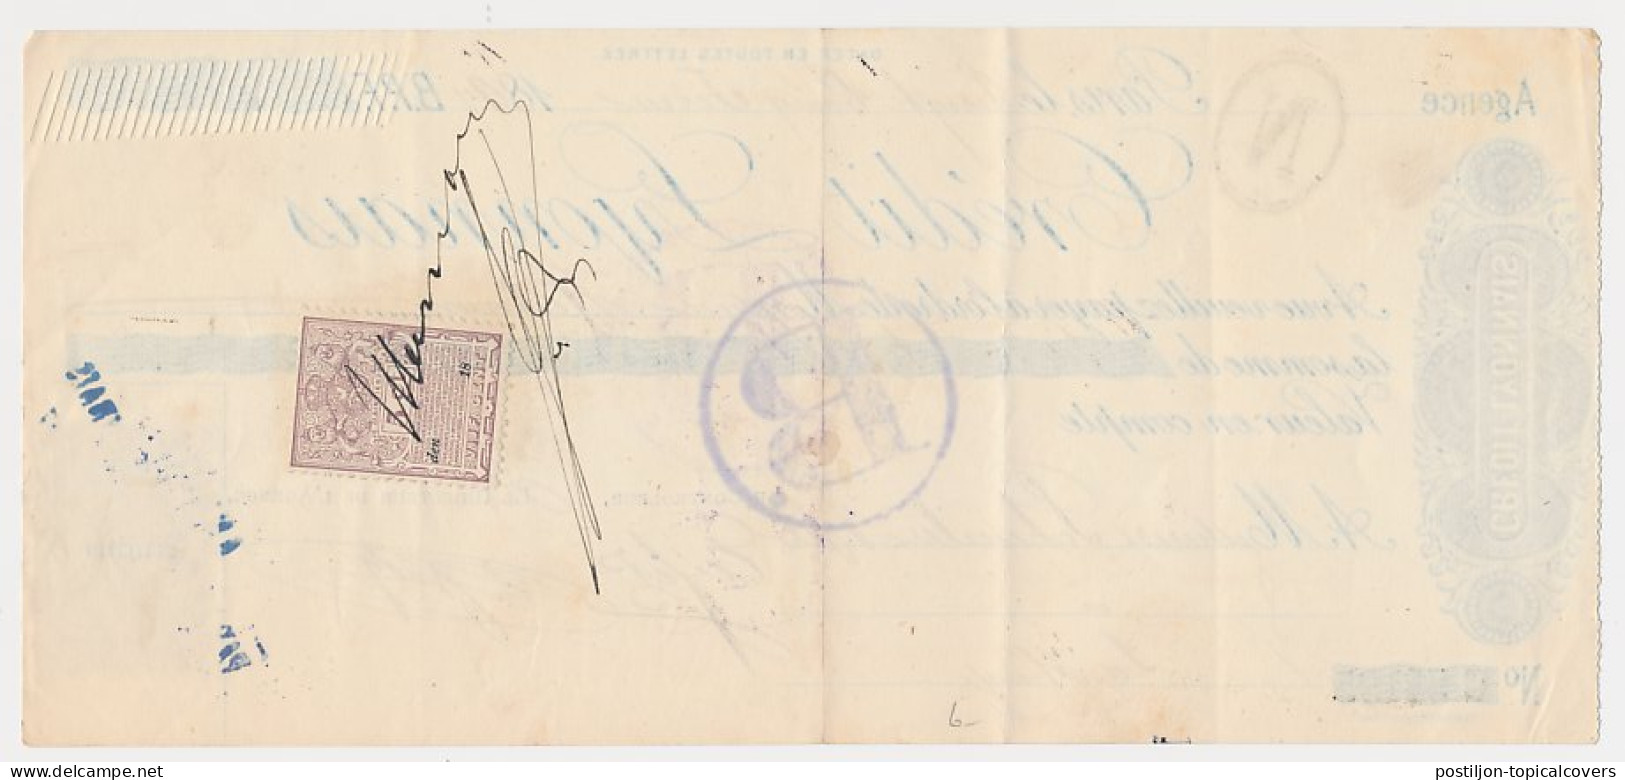 Plakzegel 5 Ct Den 18.. - Wisselbrief Den Haag 1897 - Fiscaux